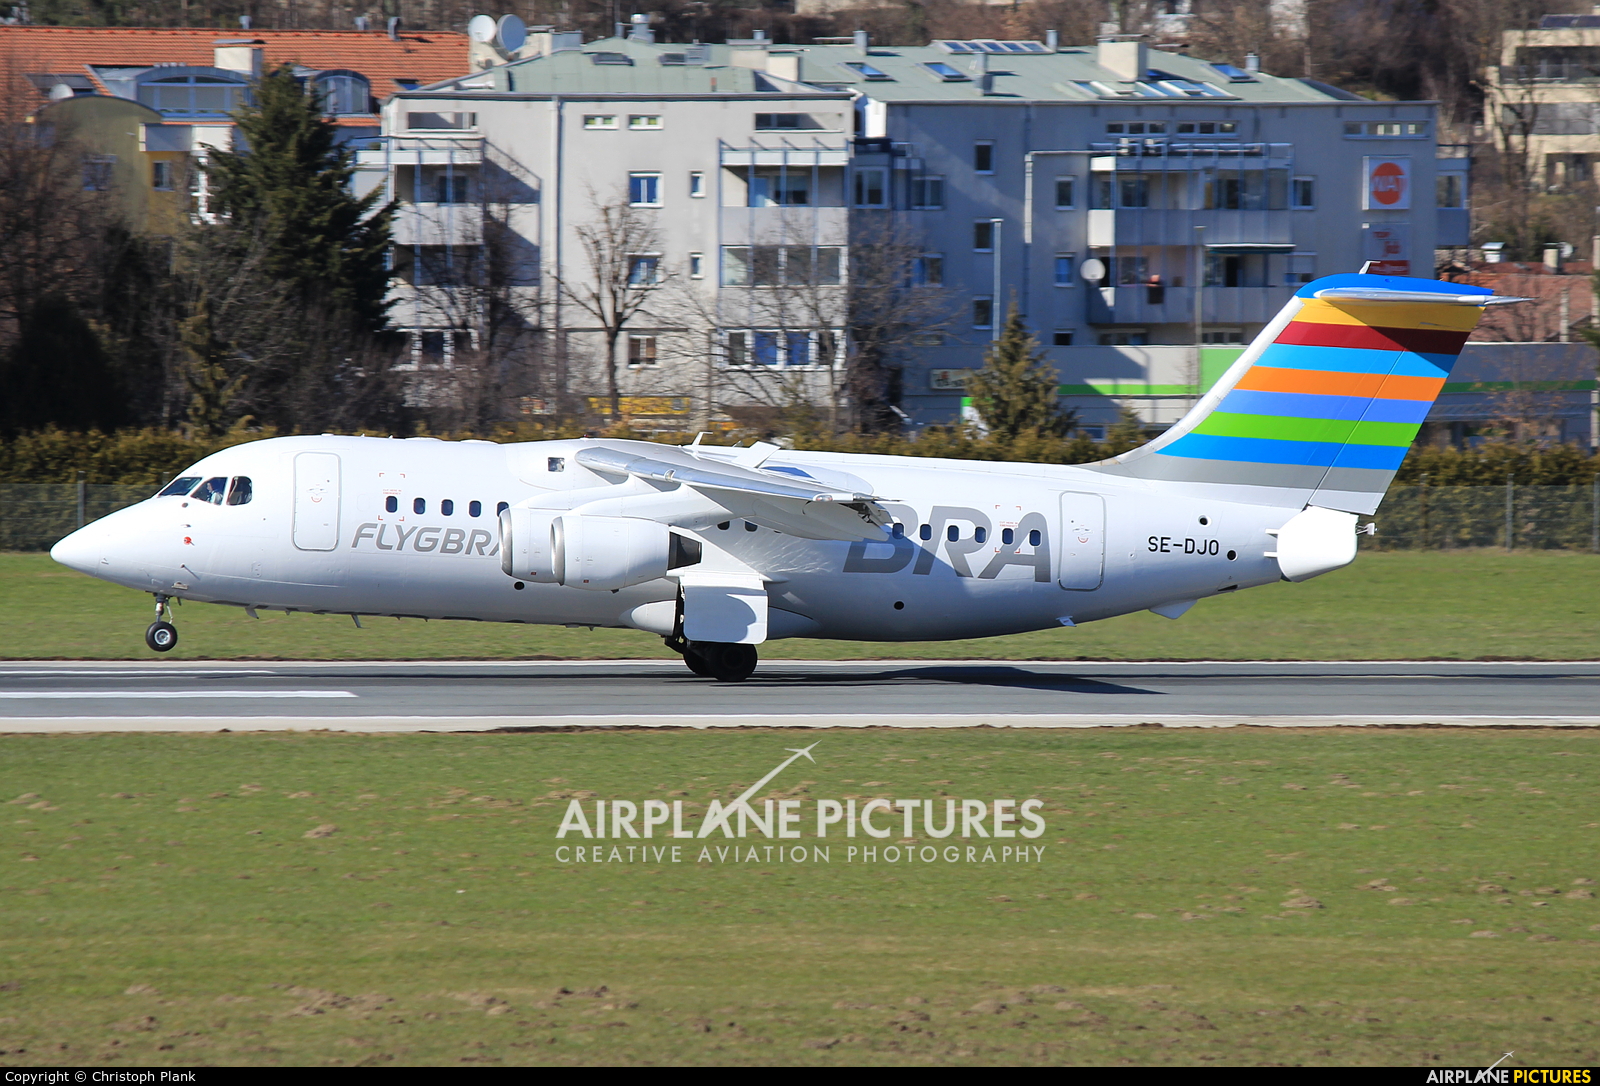 BRA (Sweden) SE-DJO aircraft at Innsbruck